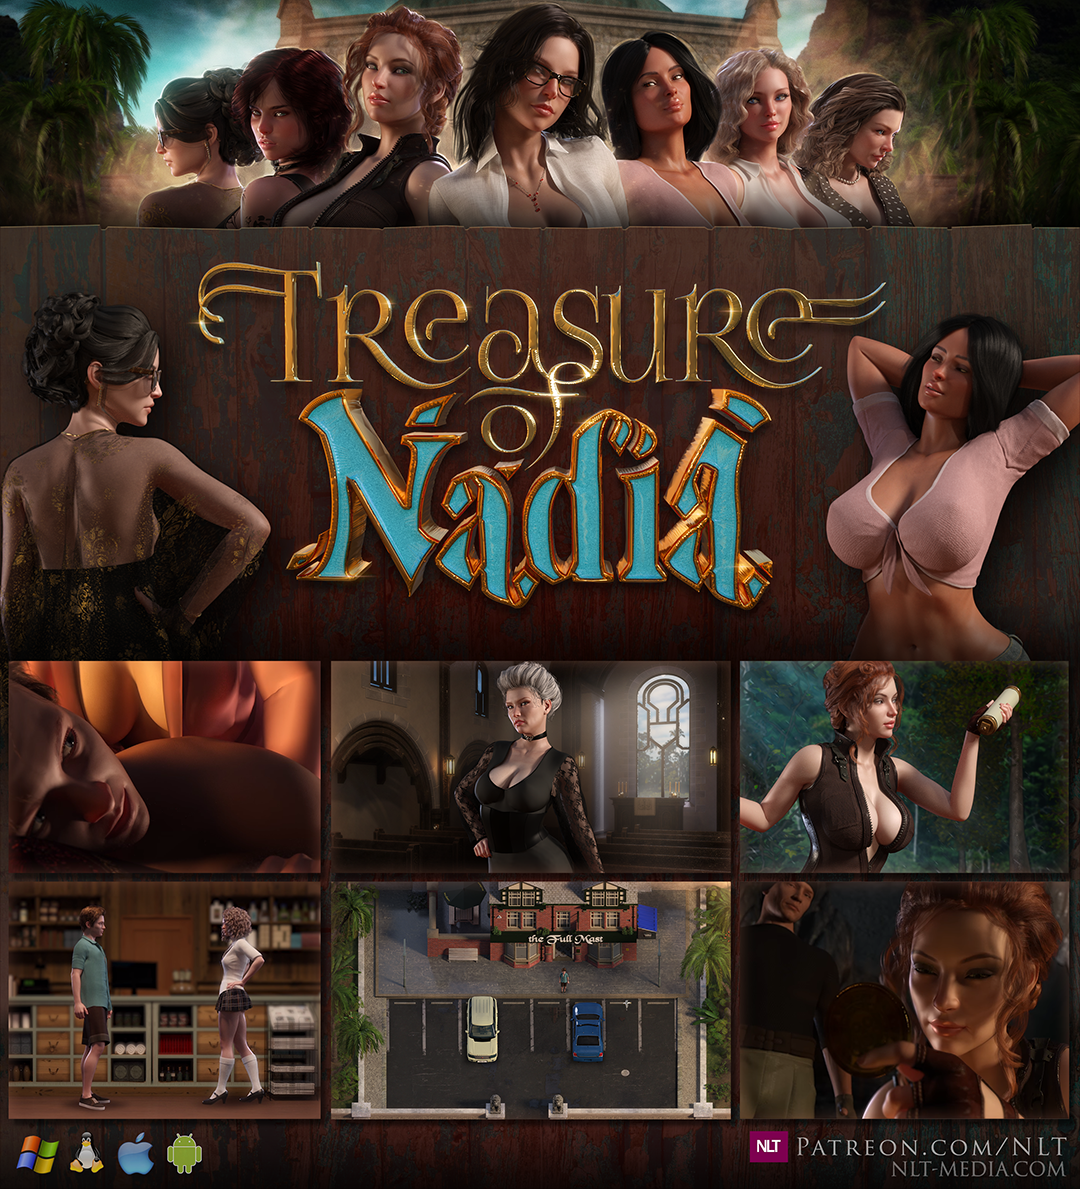 Treasure of nadia free